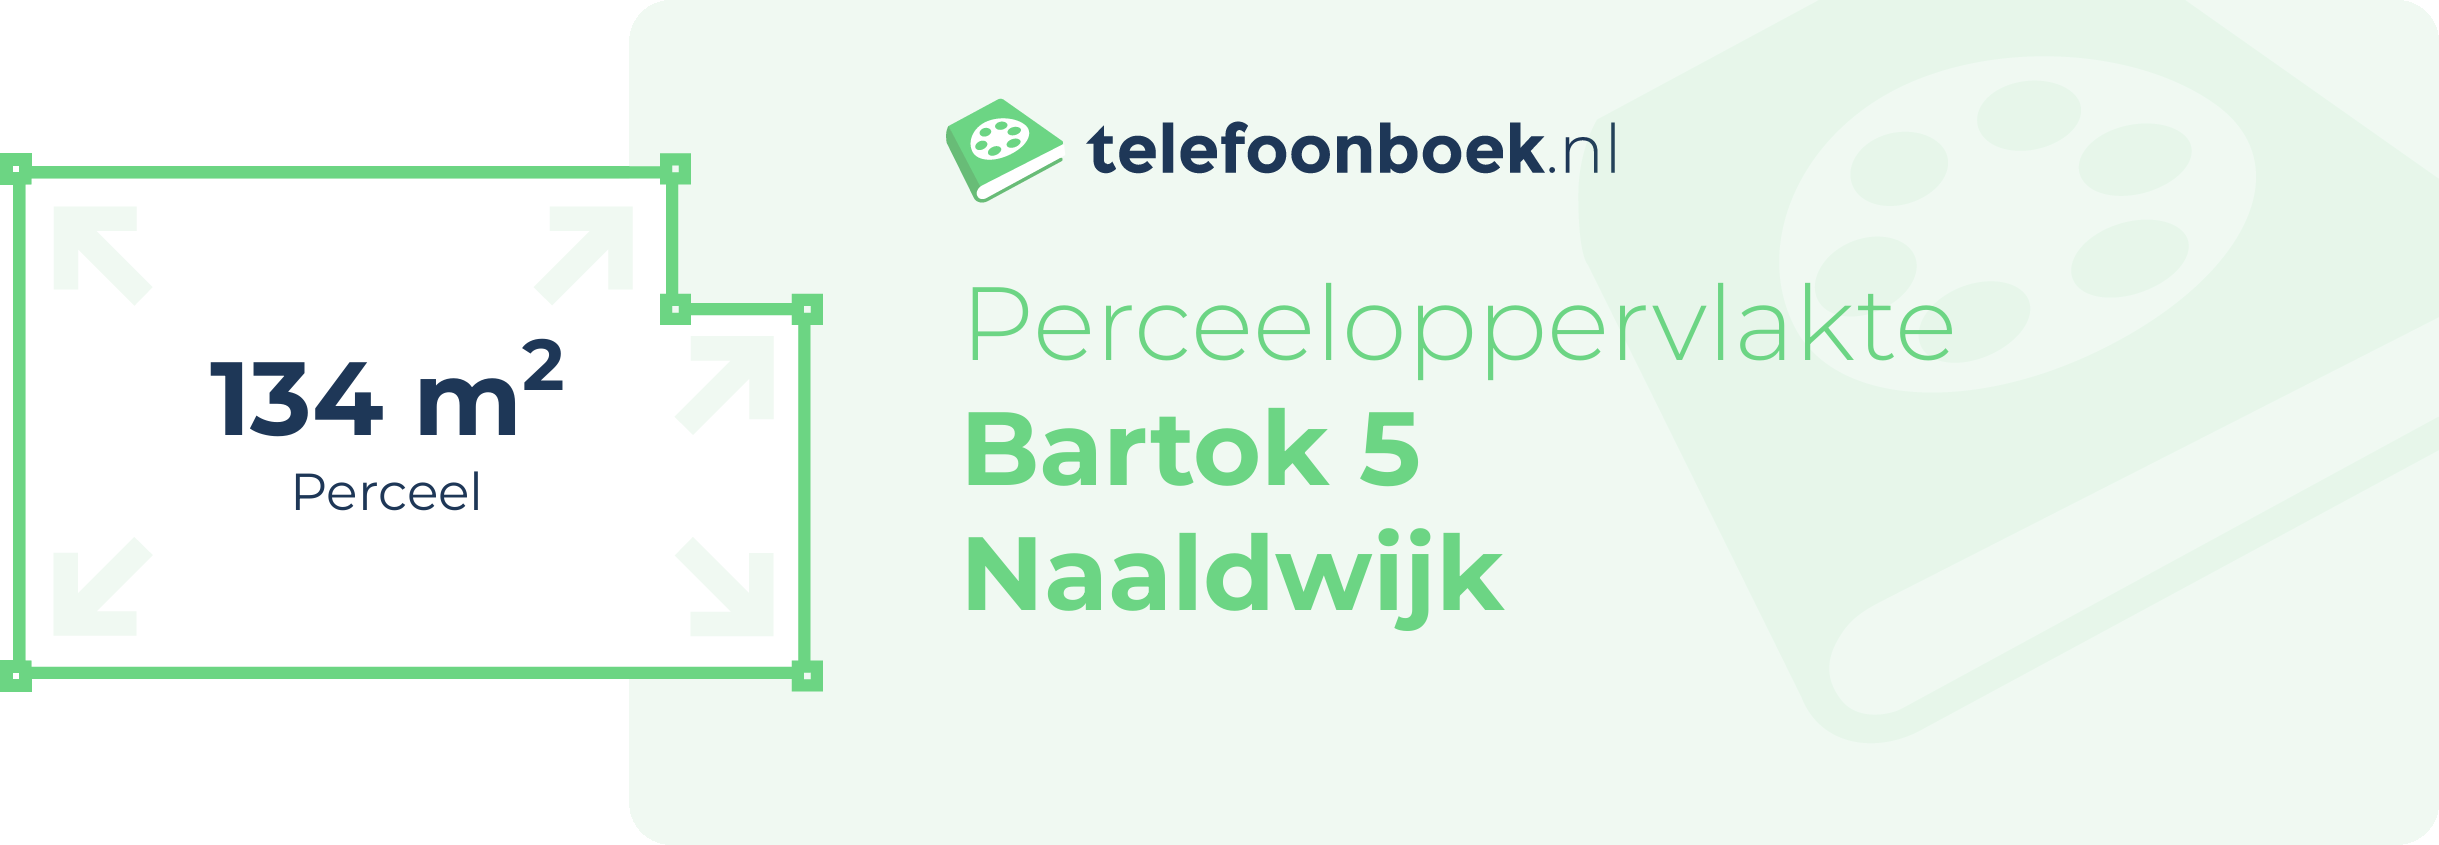 Perceeloppervlakte Bartok 5 Naaldwijk